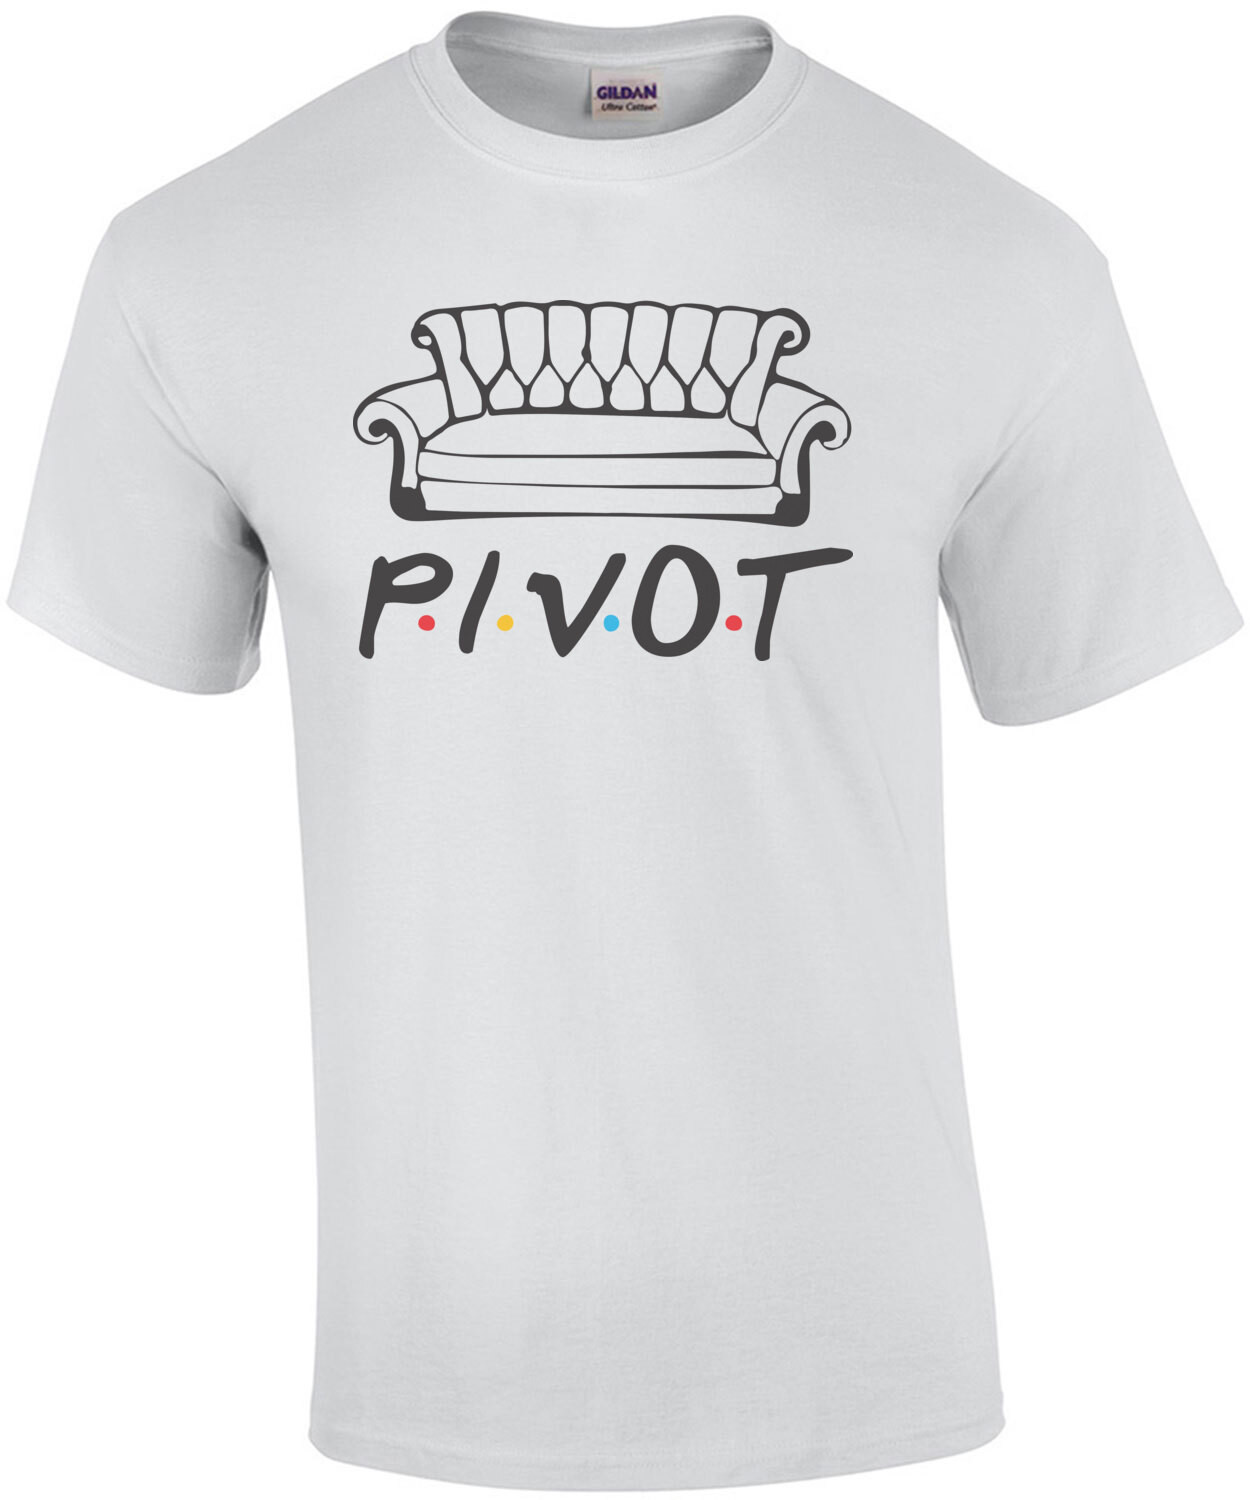 Pivot Friends Shirt